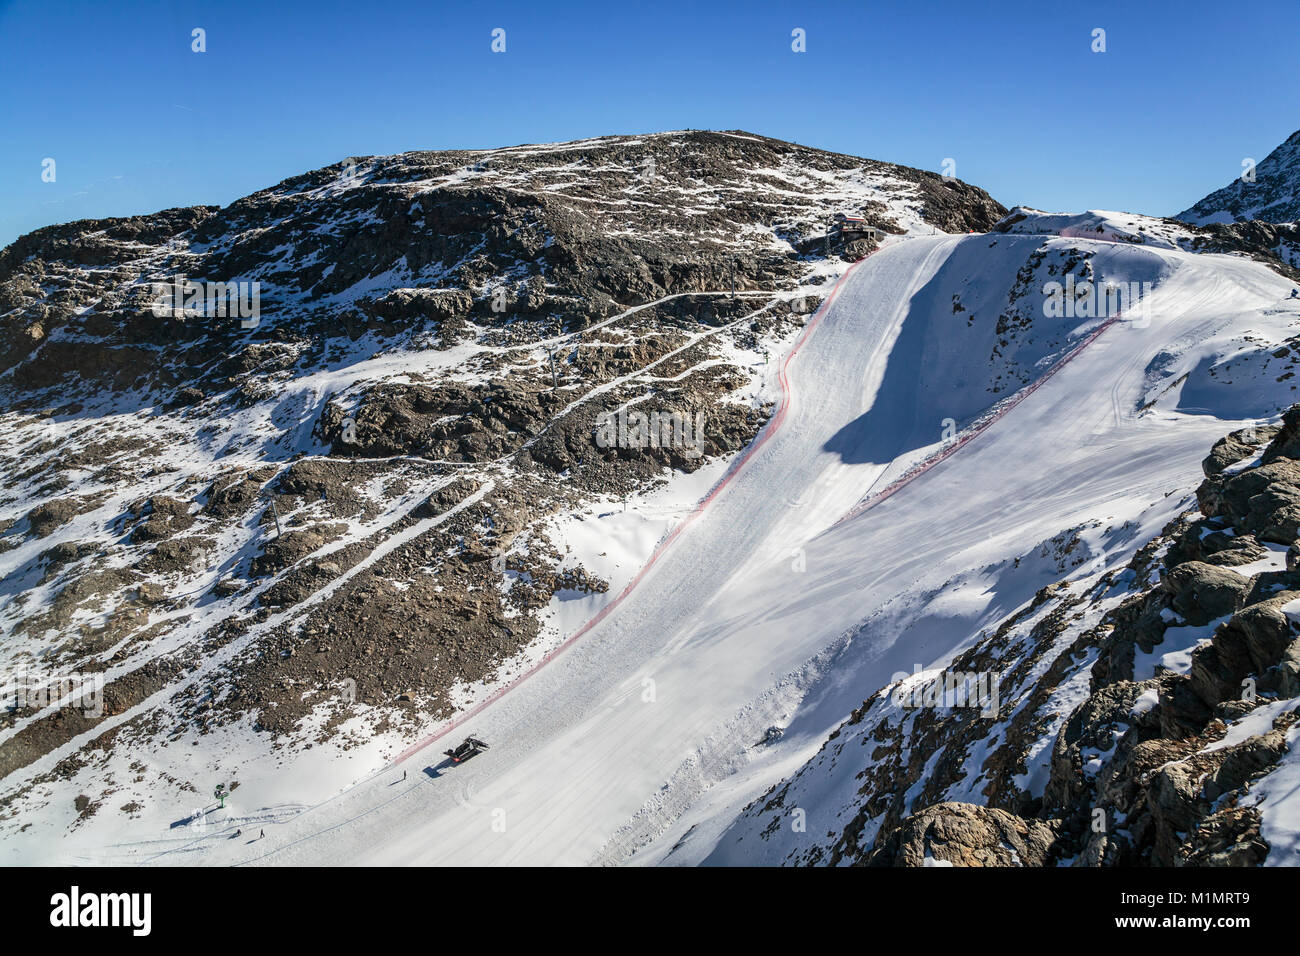 Une piste de ski dans la région de la Bernina et le pics de montagne glacier Diavolezza, près de Saint-Moritz, en Suisse, l'Europe. Banque D'Images